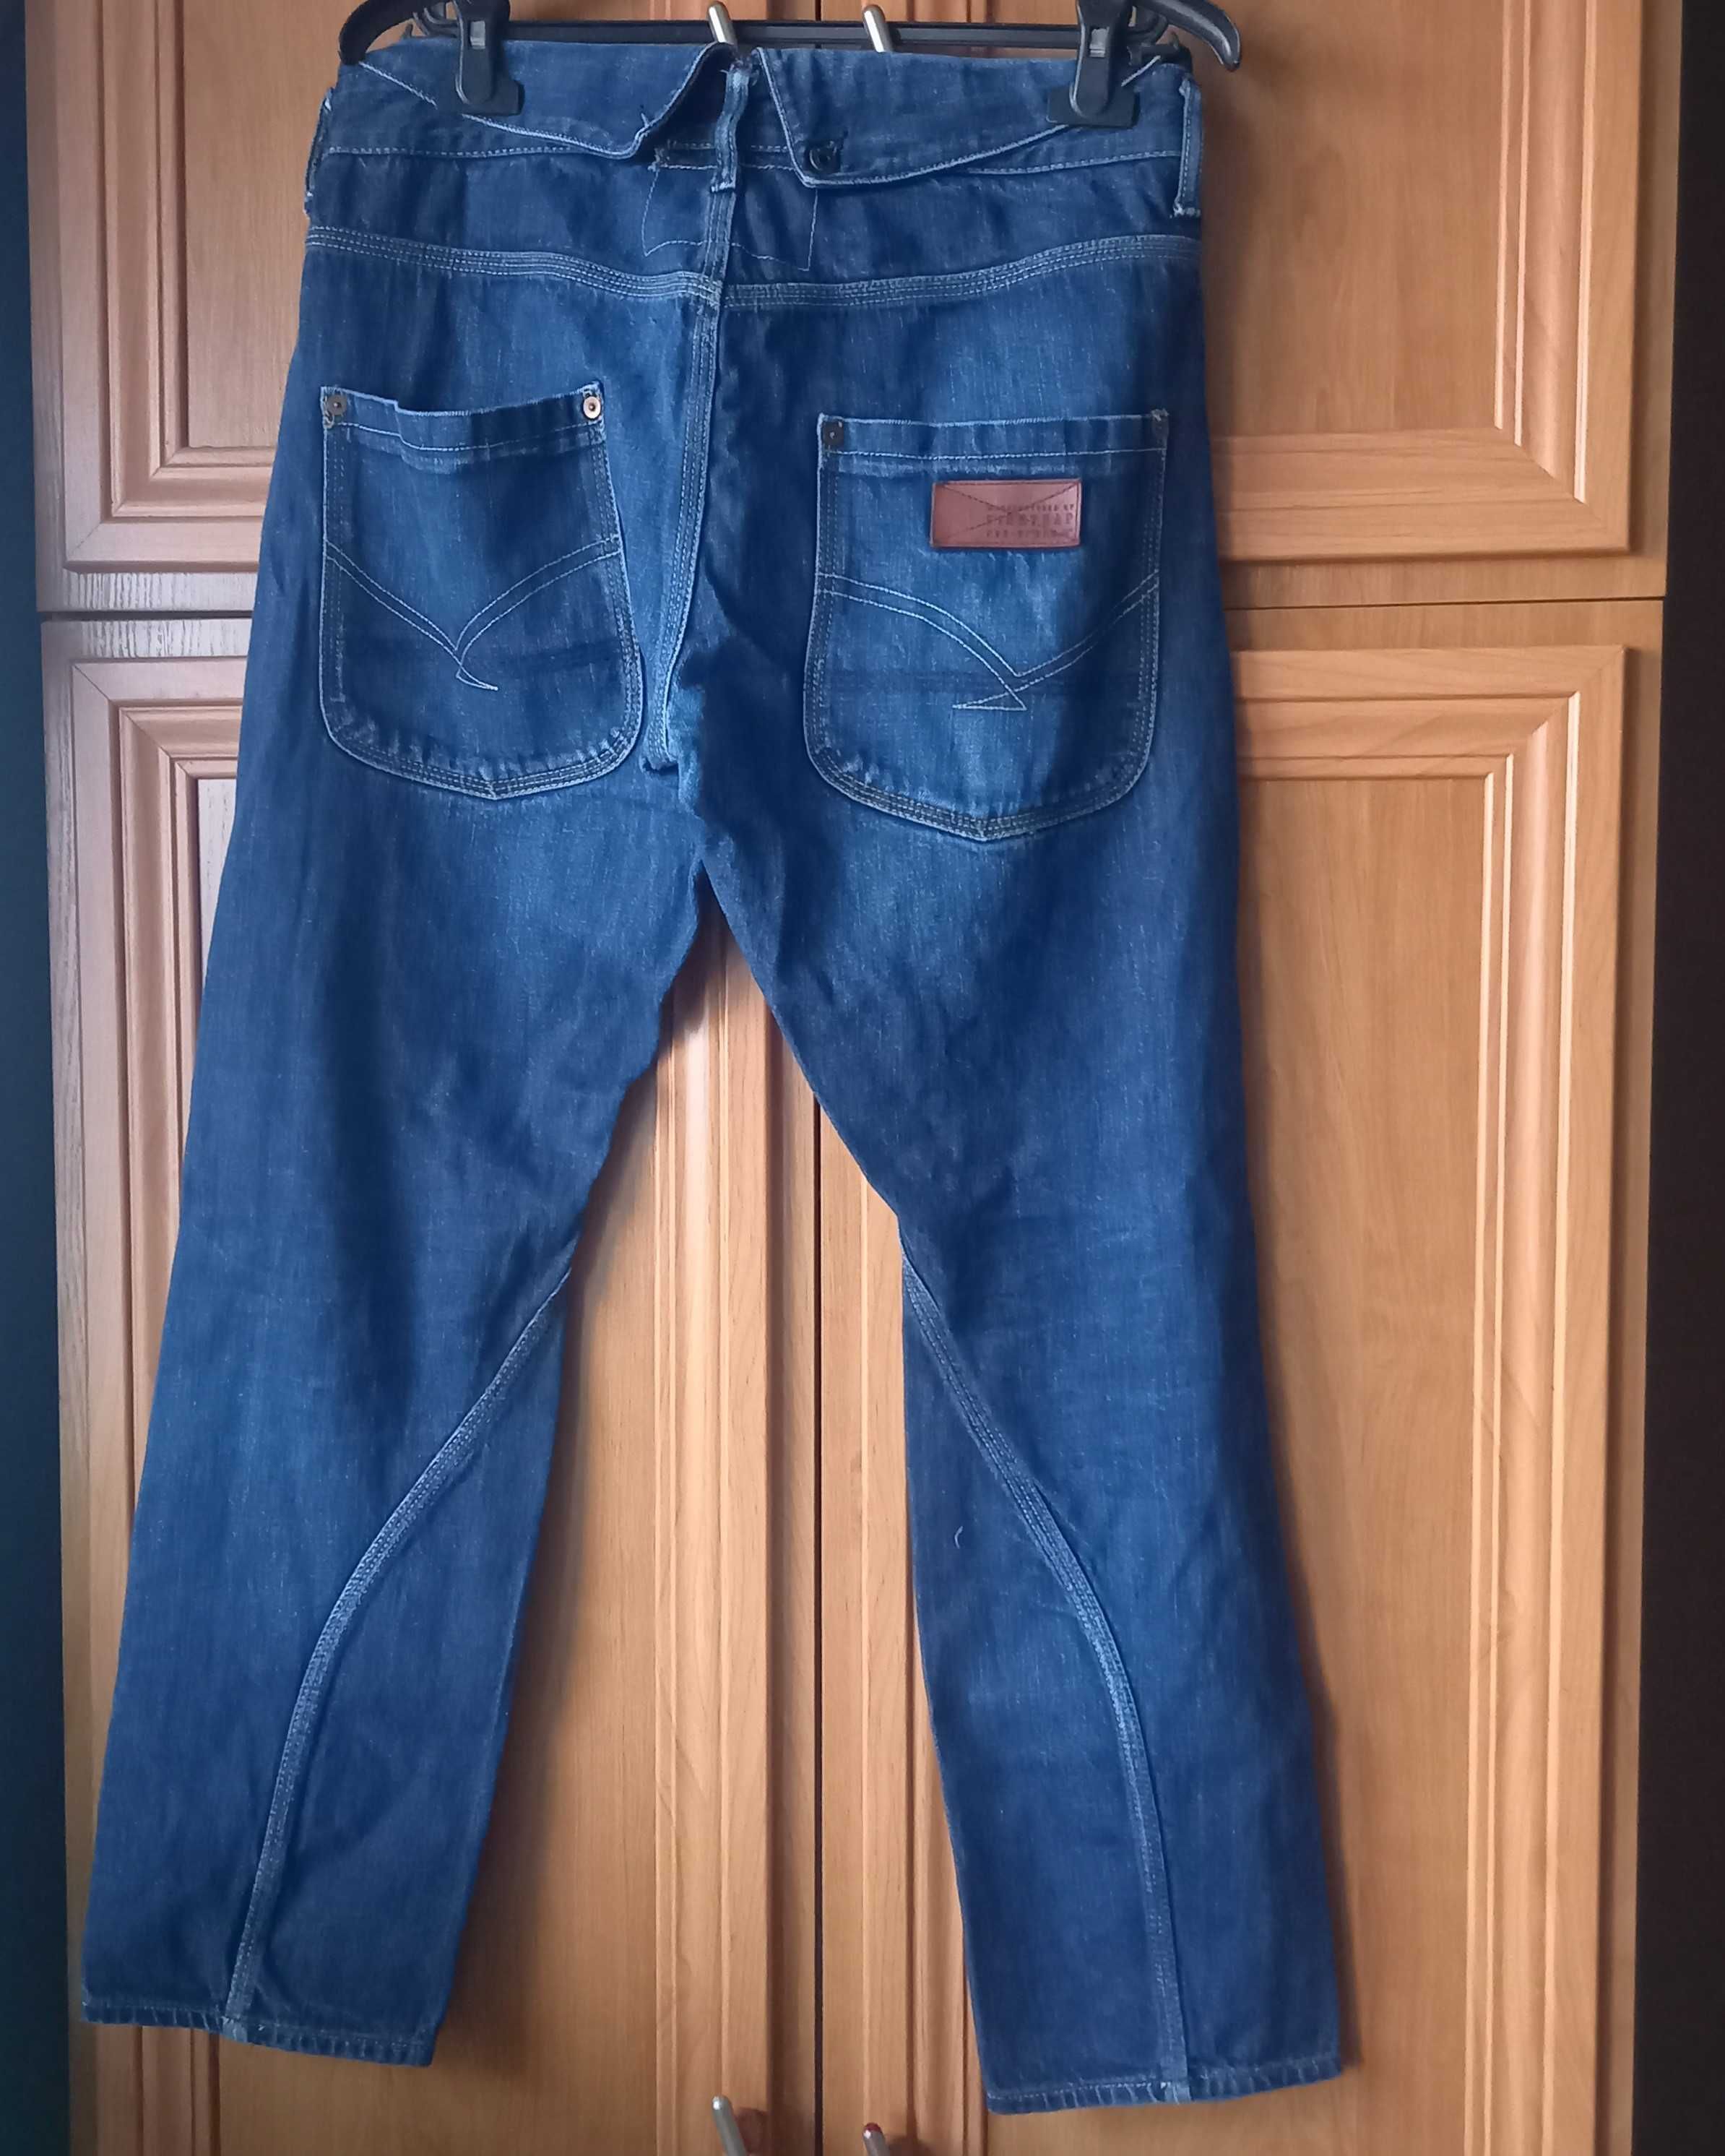 męskie spodnie jeans w 32 l30 100% bawełna